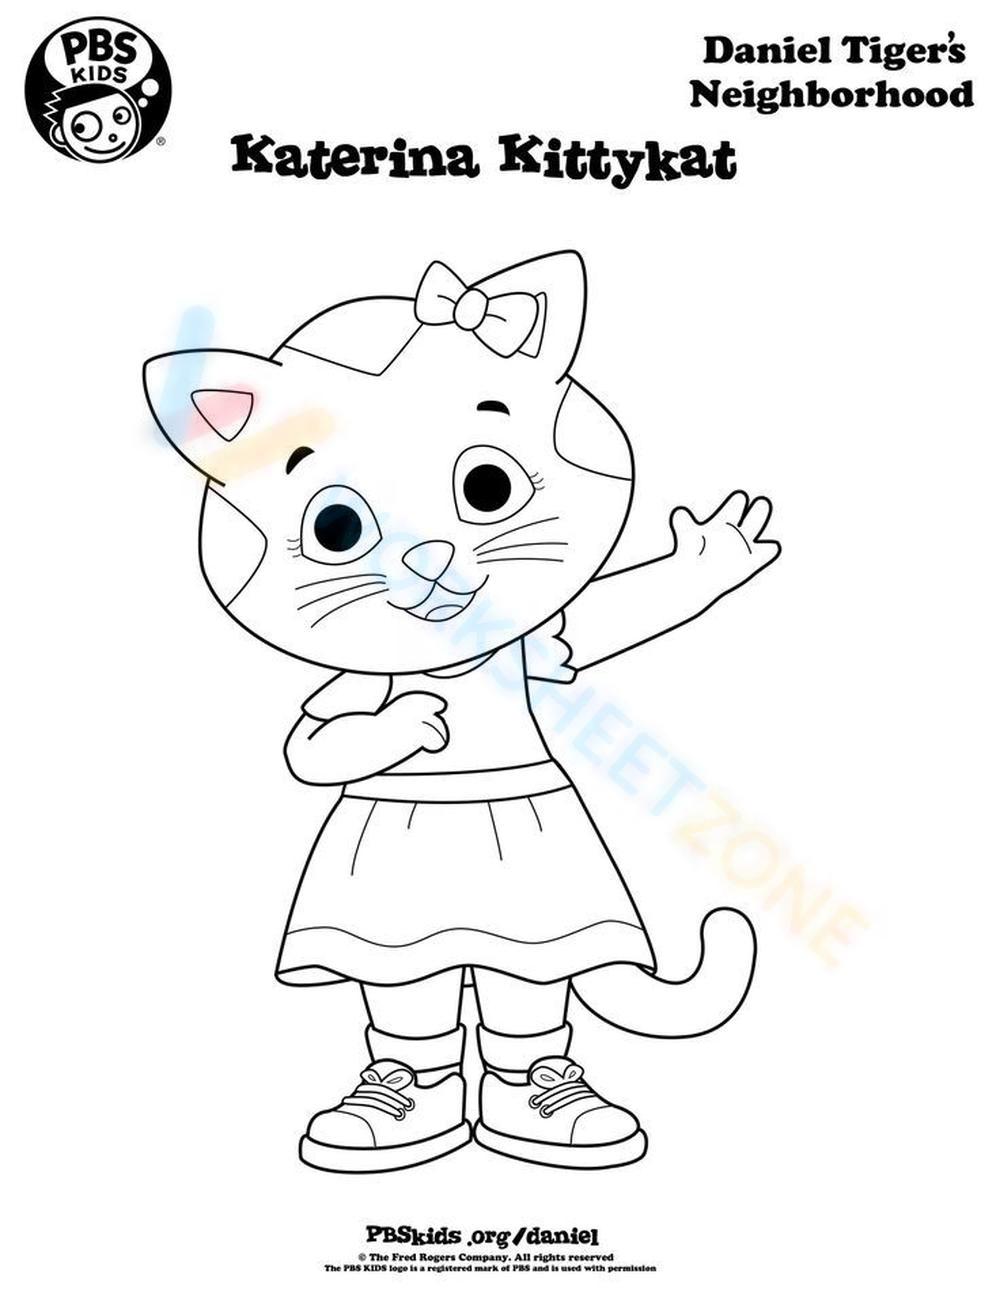 Katerina Kittycat